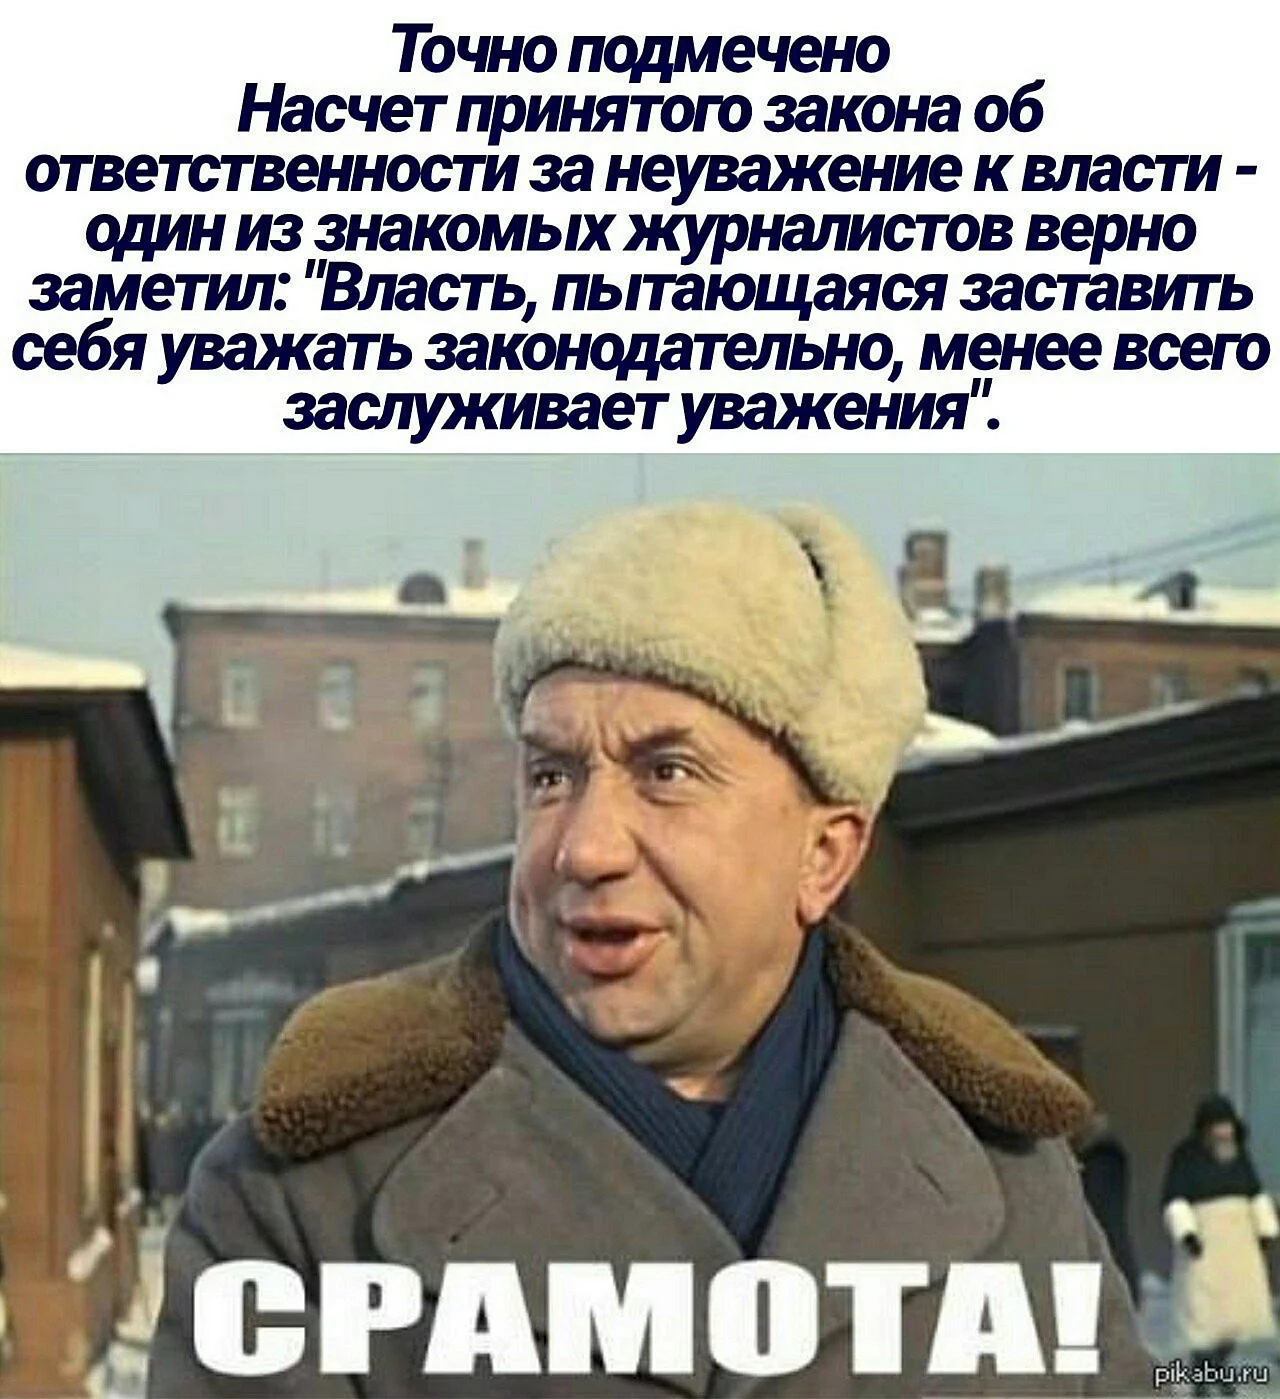 Алексей Смирнов срамота